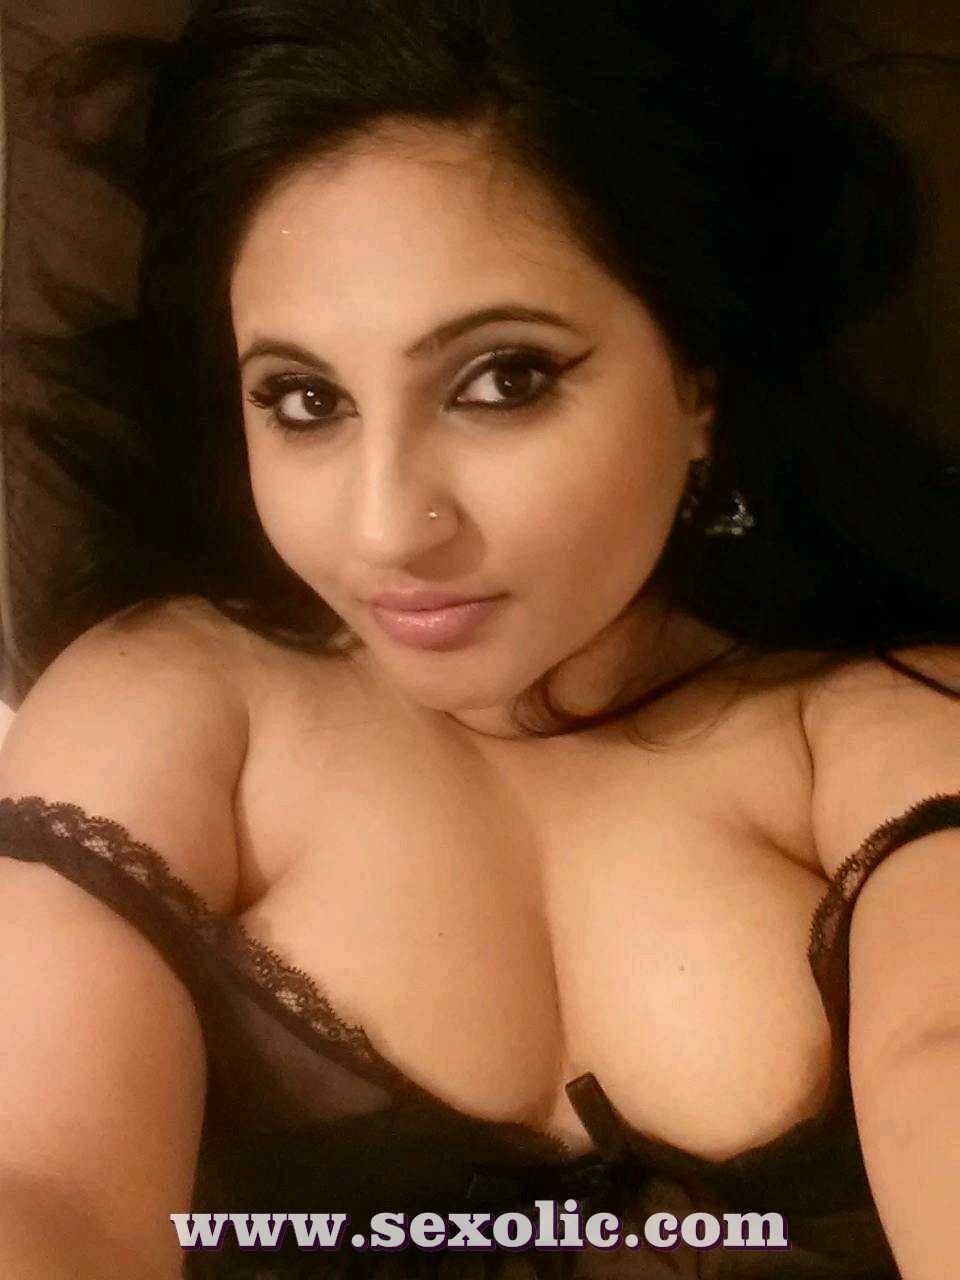 galleries nude big breast selfies